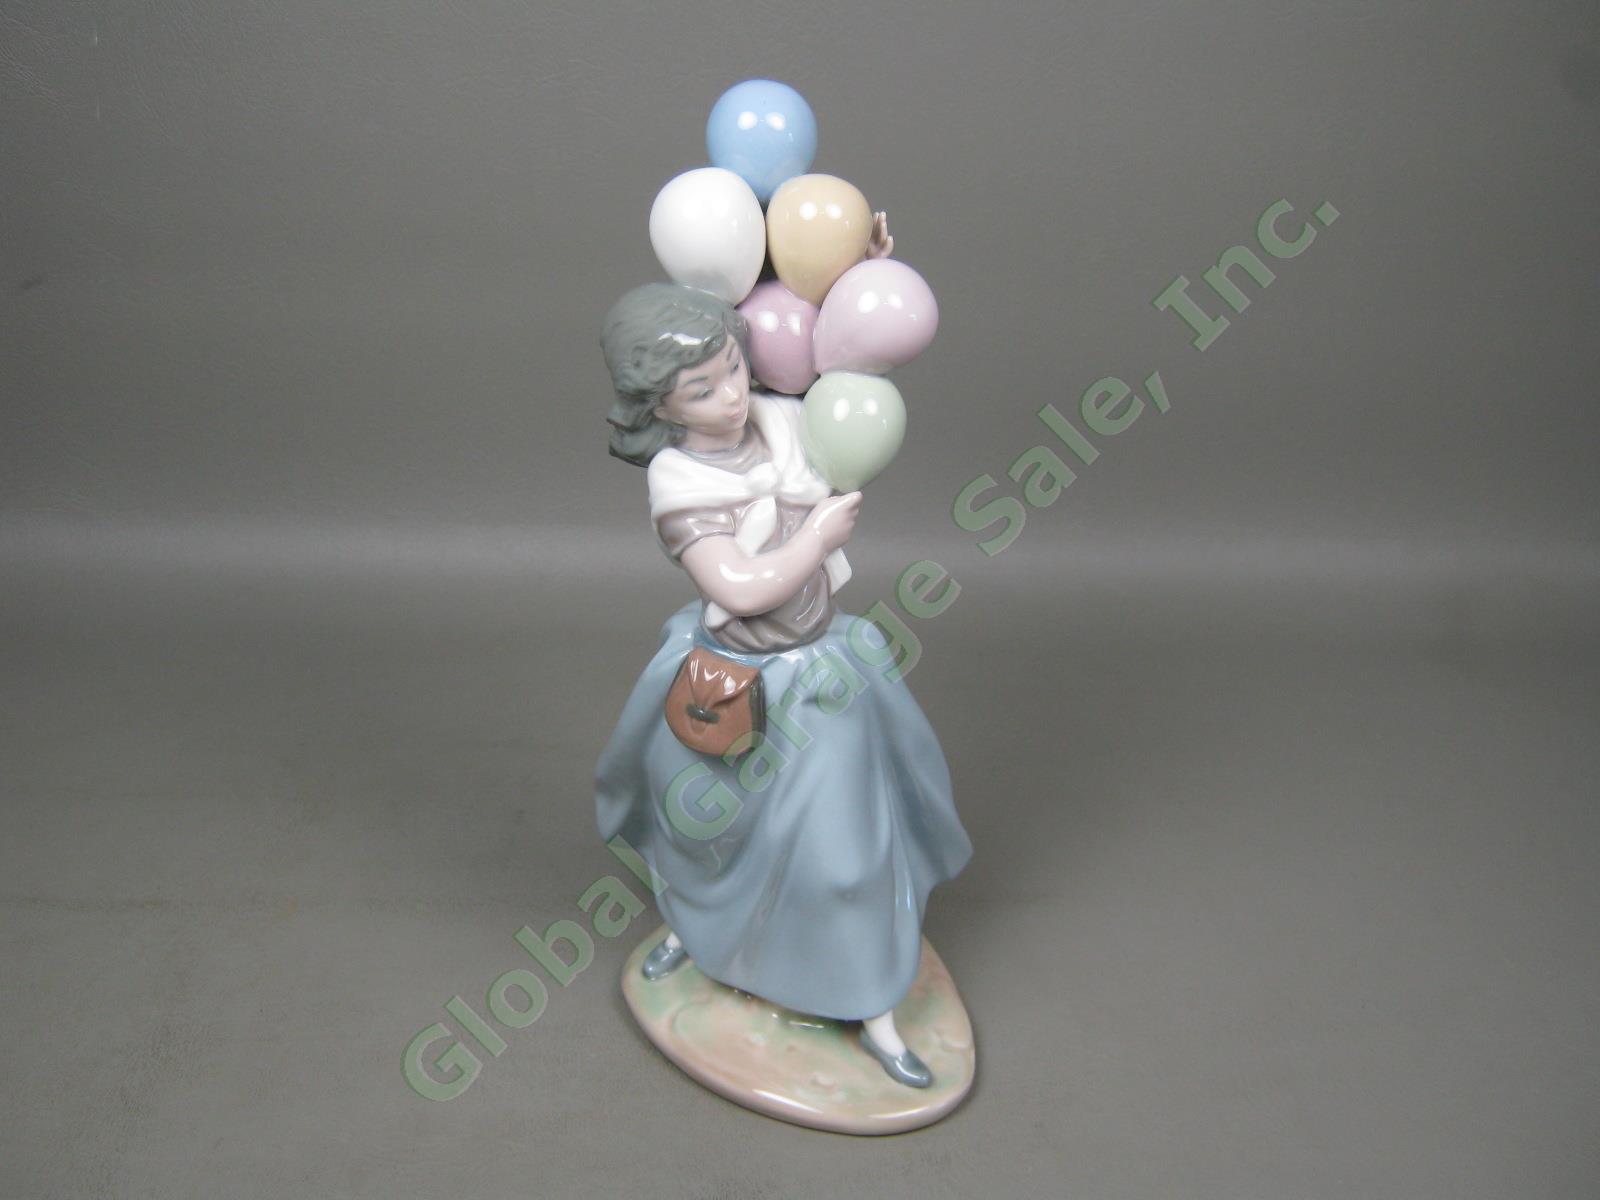 Vtg Retired Lladro Glossy Glazed Porcelain Balloon Seller Girl Figurine 10" 5141